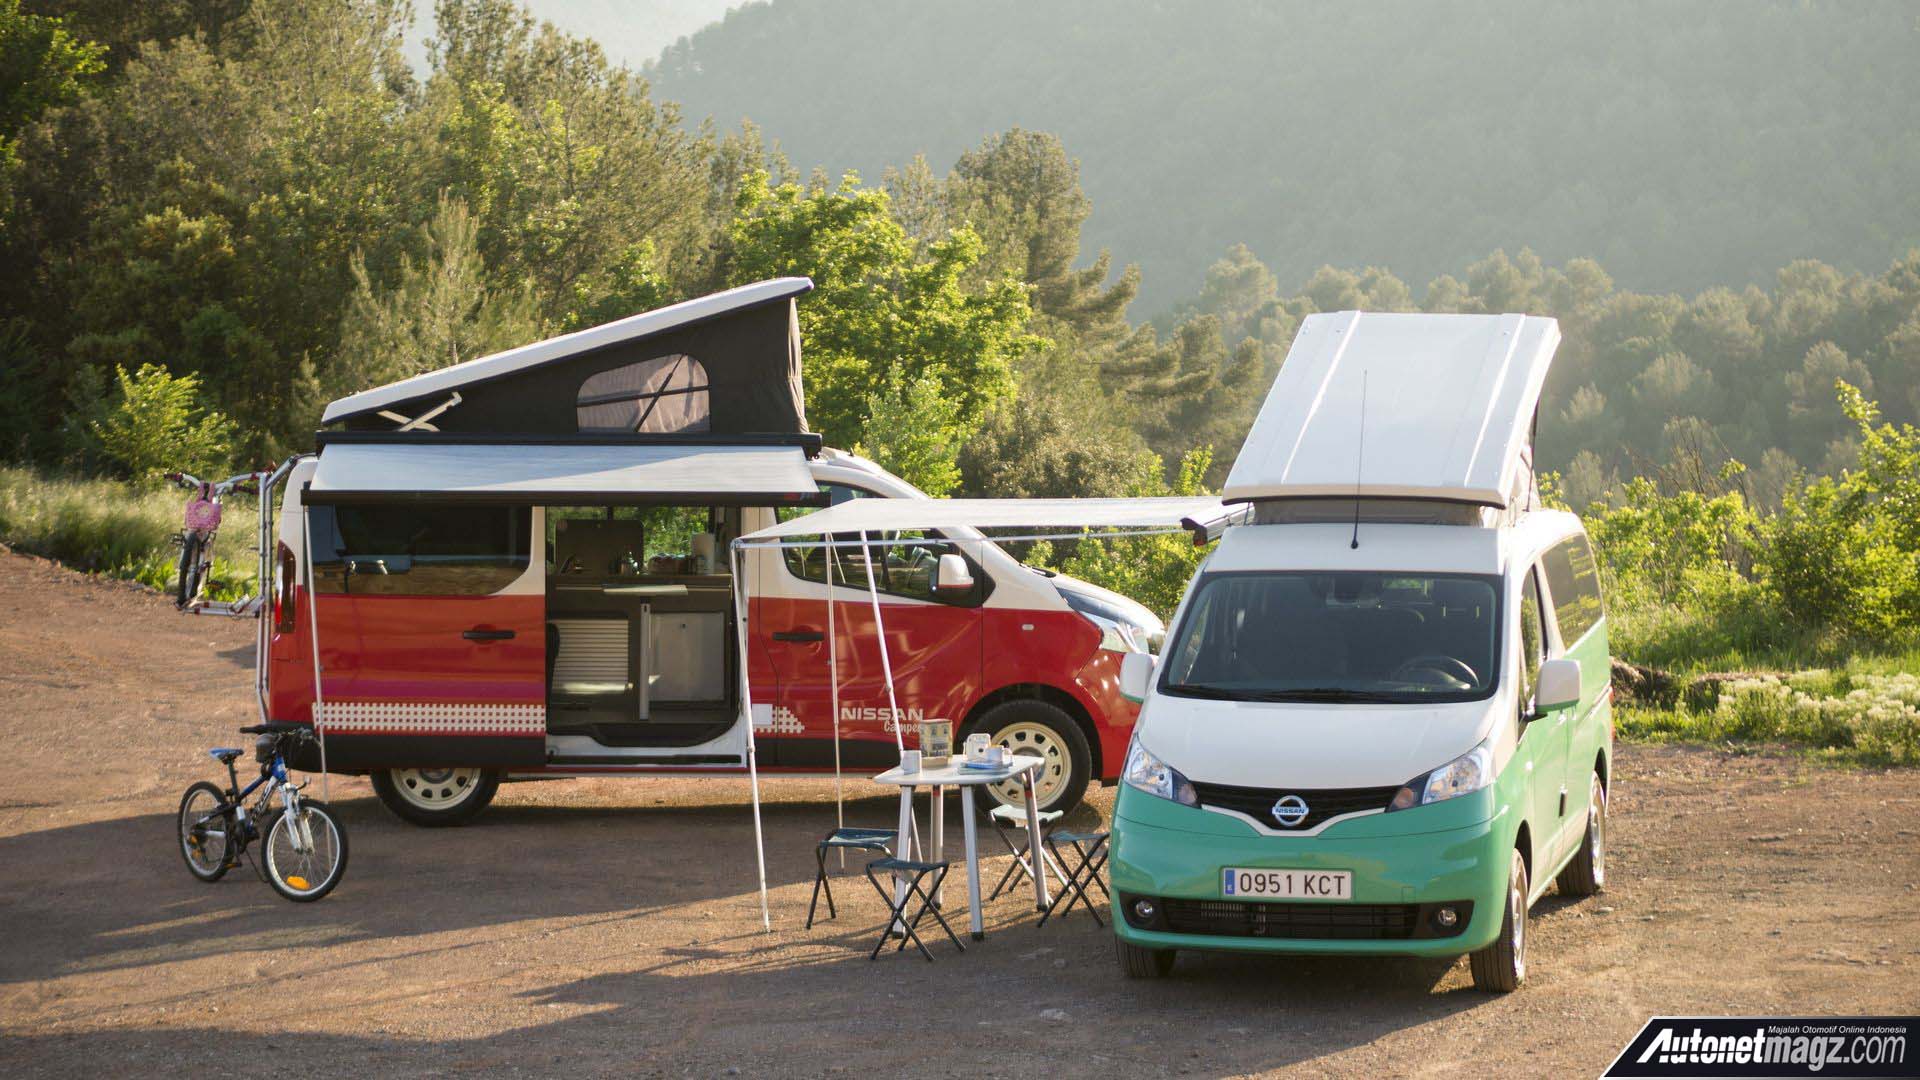 Berita, Nissan e-NV200 Camper Van 2018 Spanyol: Nissan e-NV200 Camper Van, Evalia Yang Cocok Untuk Mudik